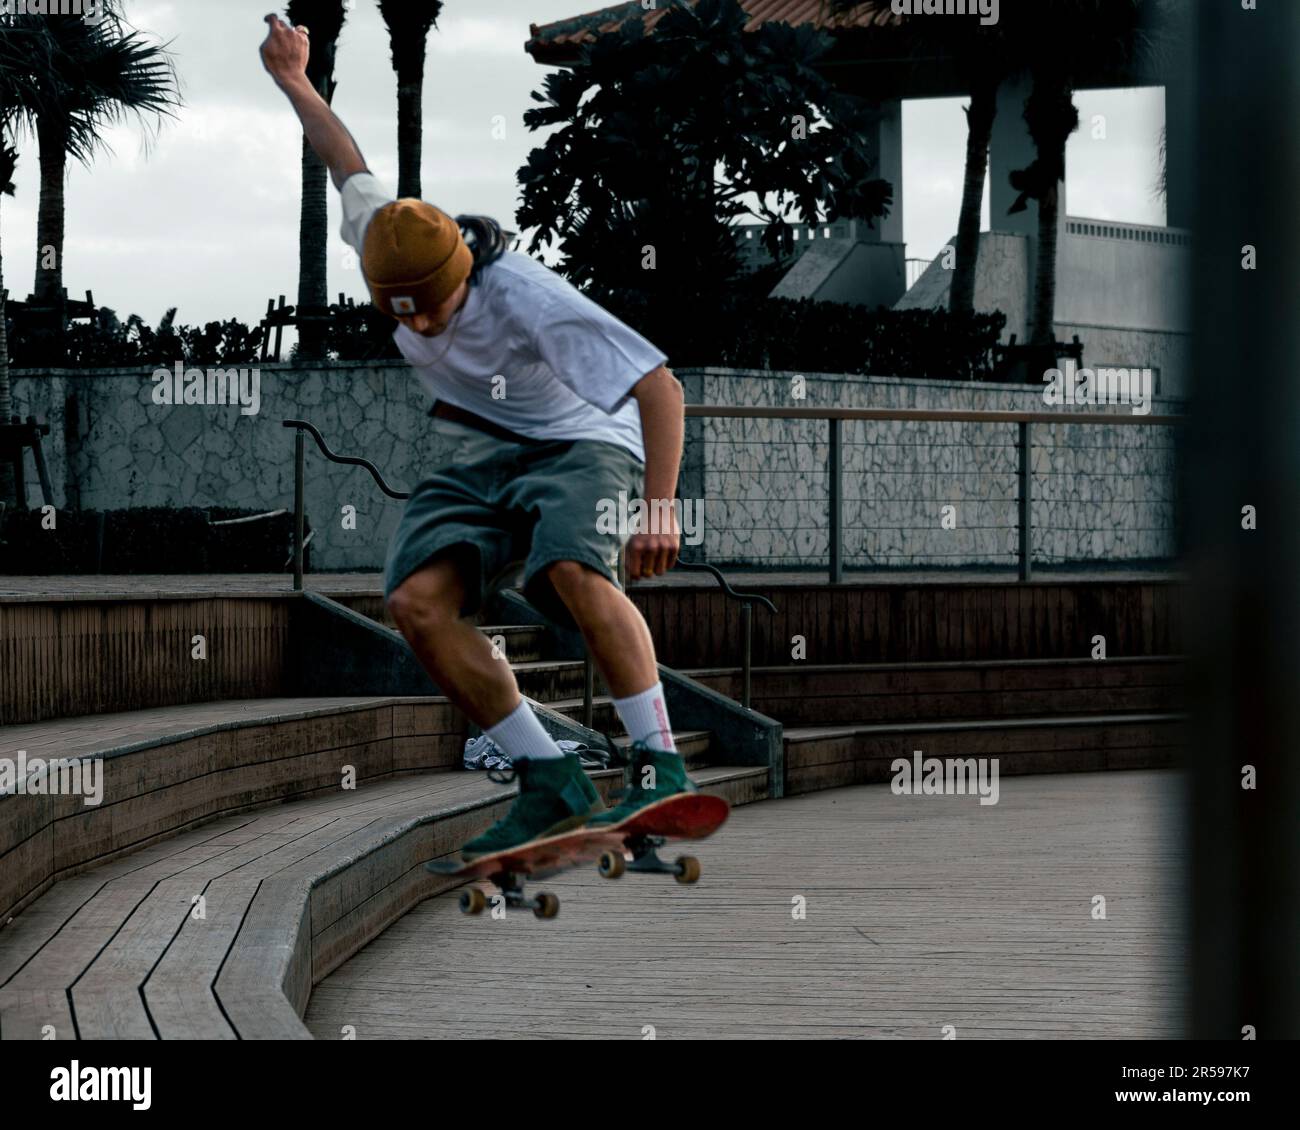 Male skateboarder doing tricks Stock Photo